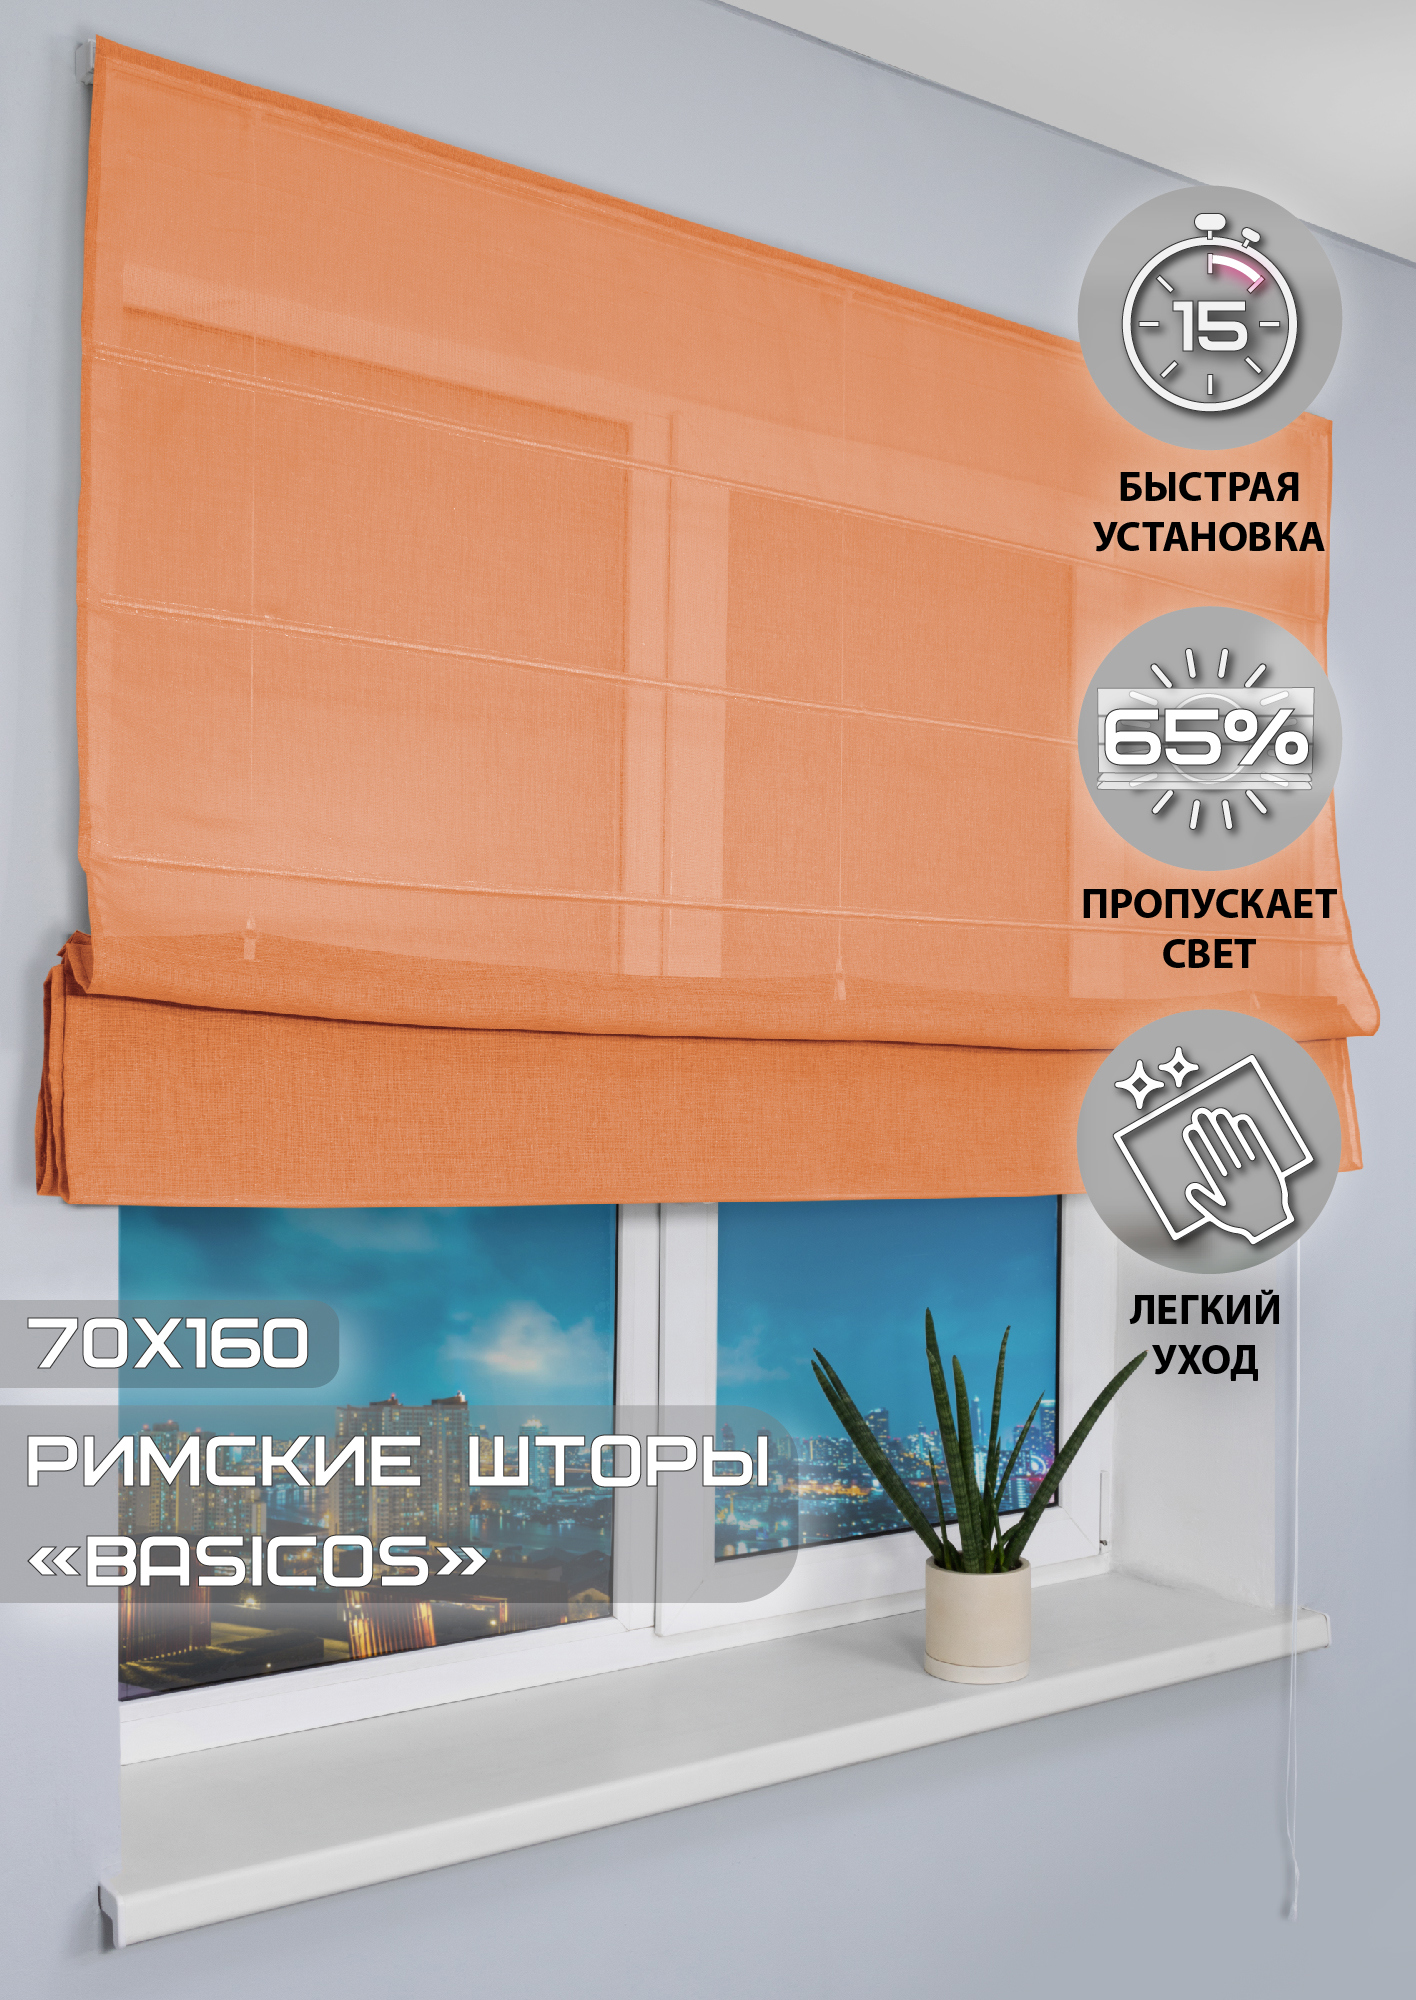 91002966 Римская штора "Basicos" 160x70 см цвет оранжевый STLM-0434235 ЭСКАР